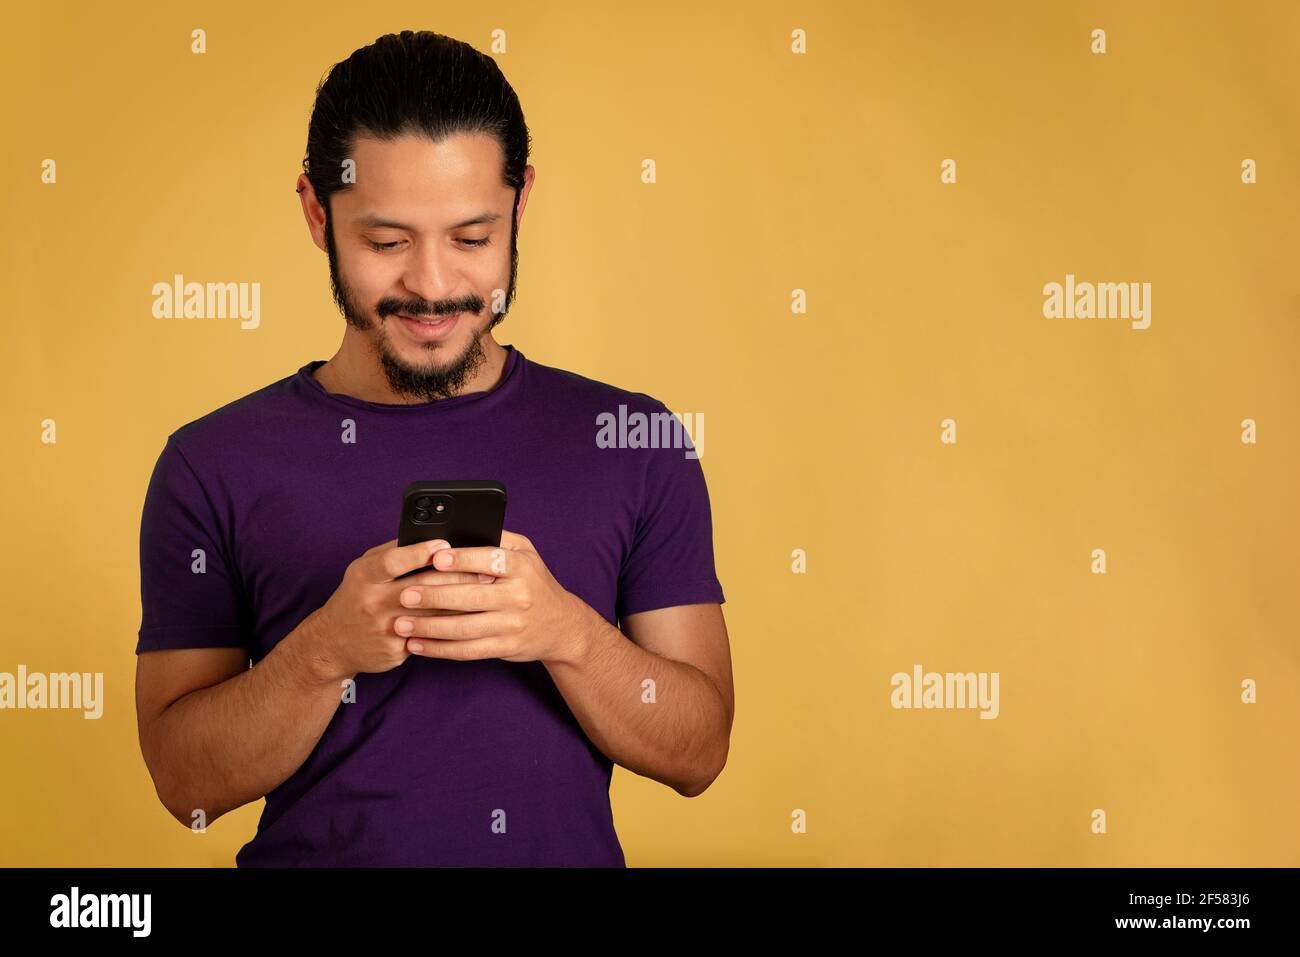 Junger Mann SMS und spielen mit dem Smartphone. Gelber Hintergrund. Stockfoto